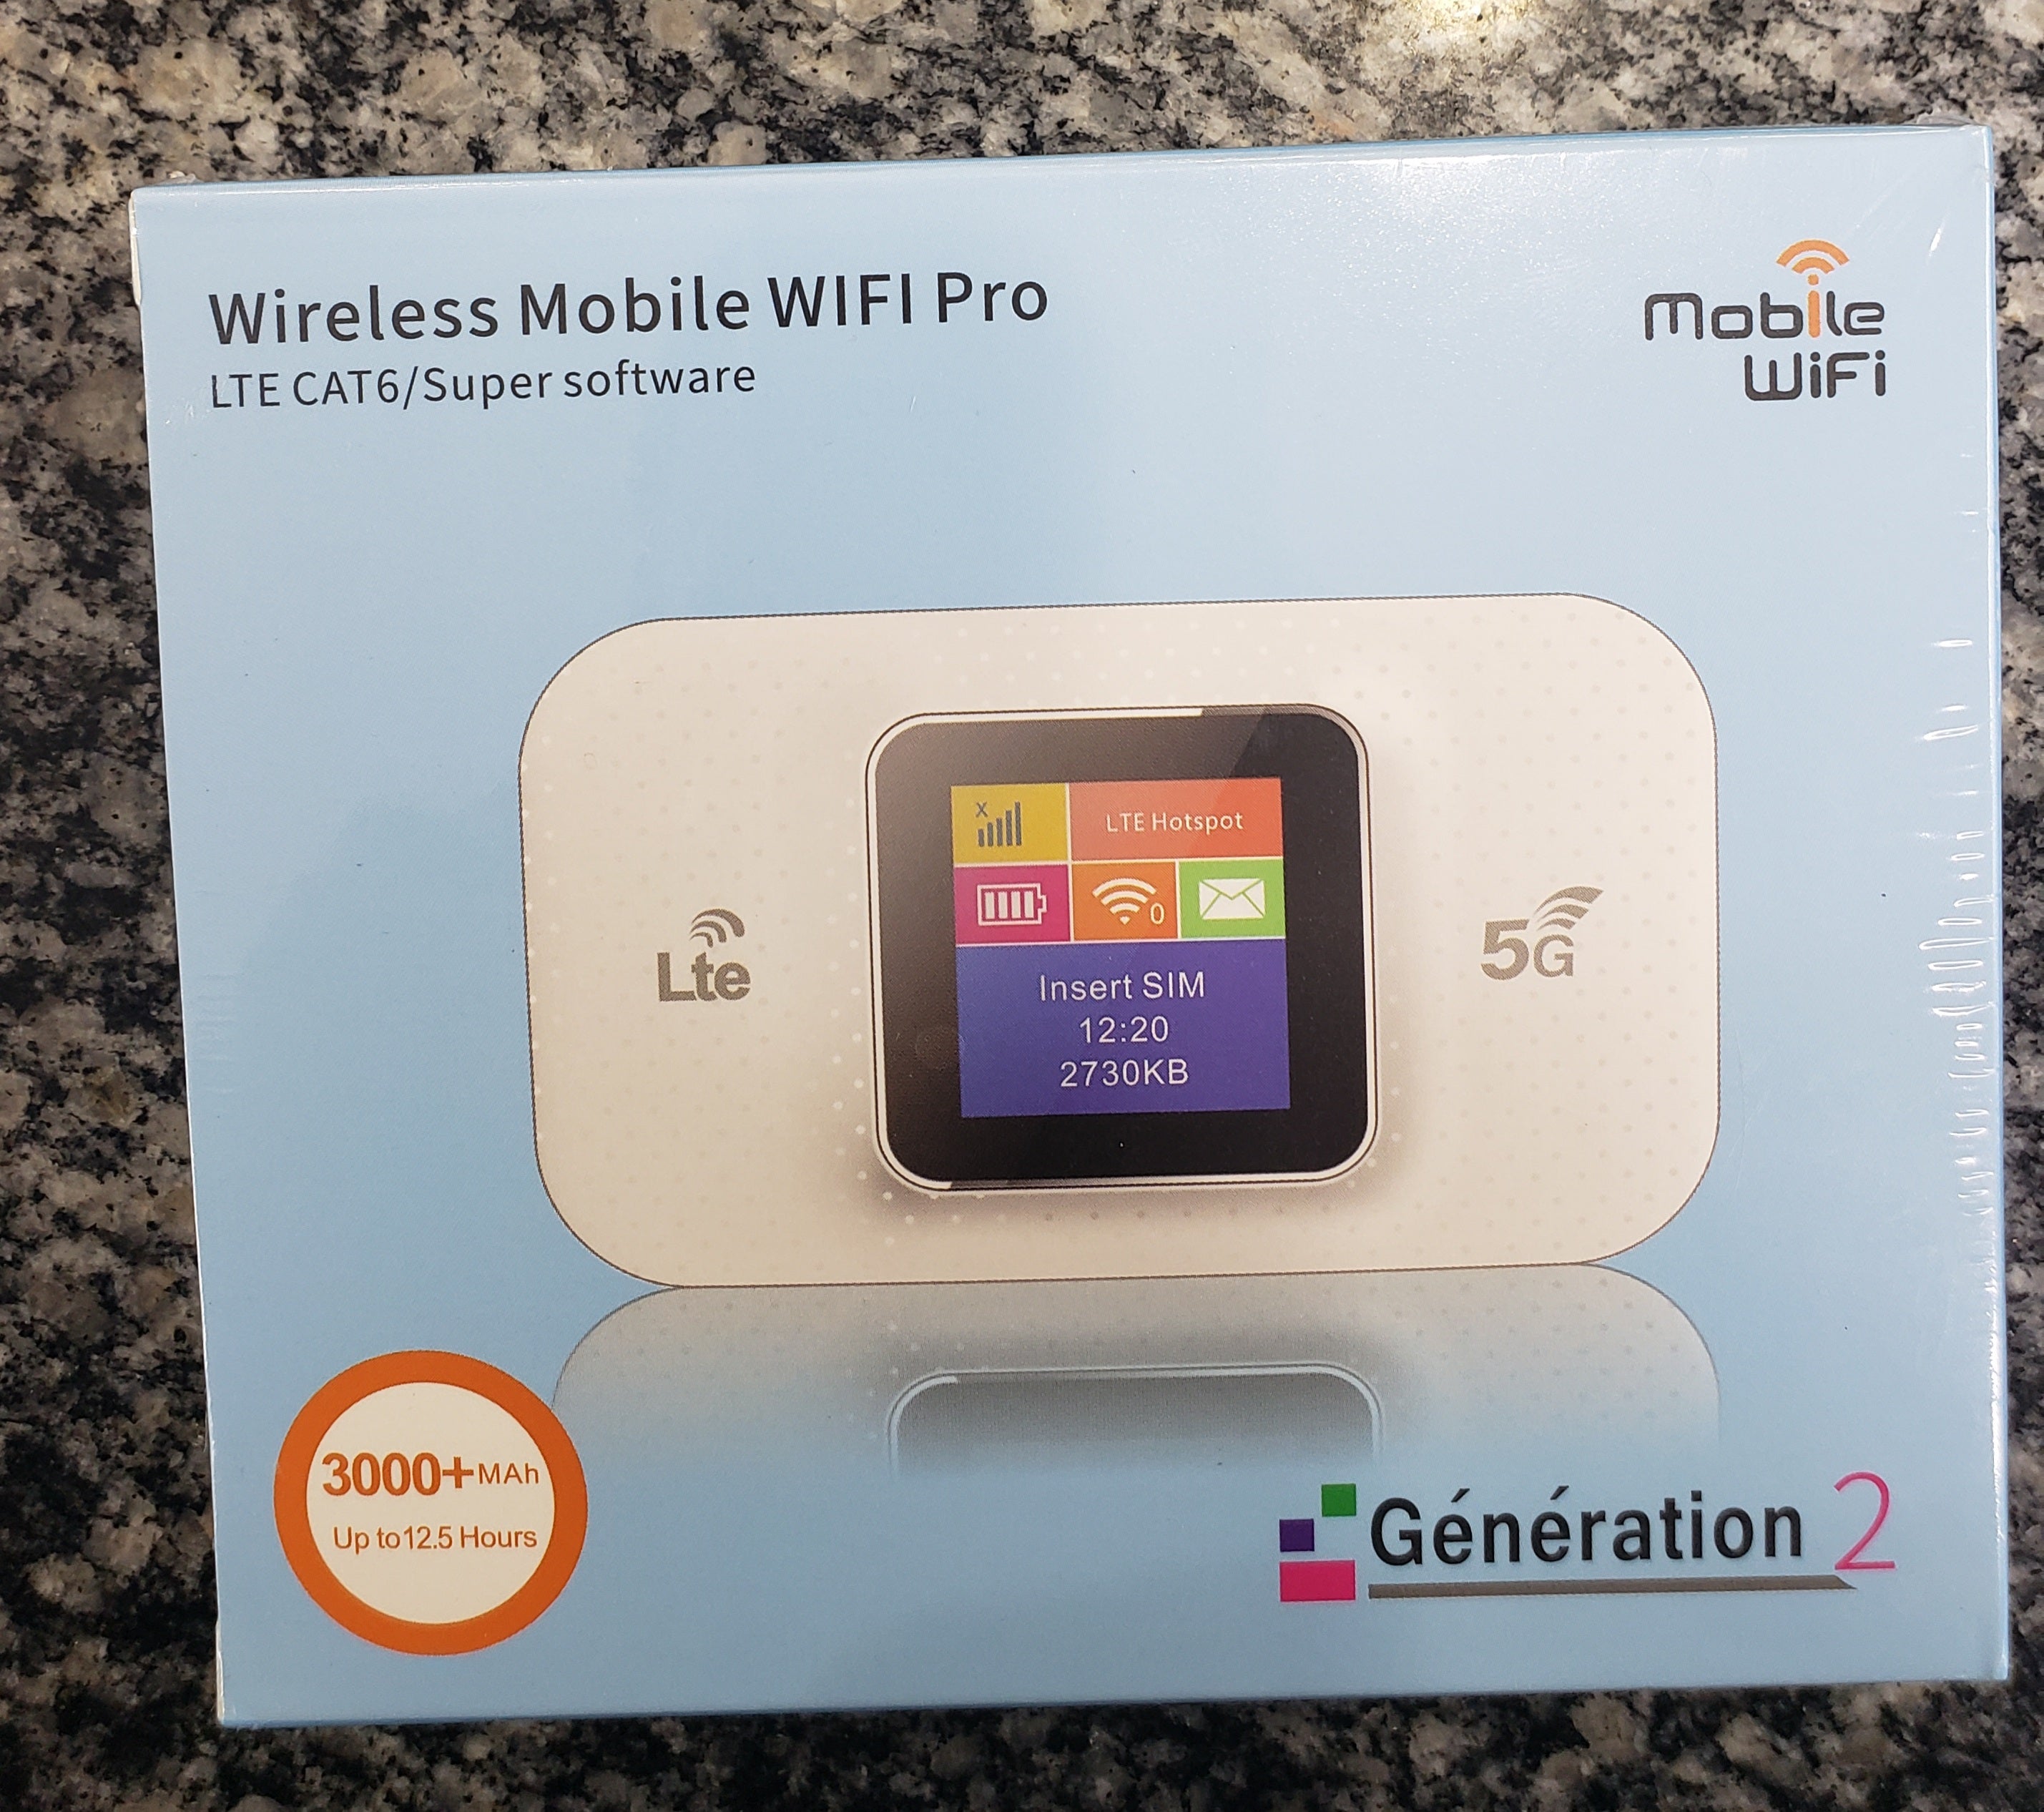 Advanced Wireless Mobile WIFI E5785 Pro LTE CAT6/Super software 4G + Lte 5G Generation 2